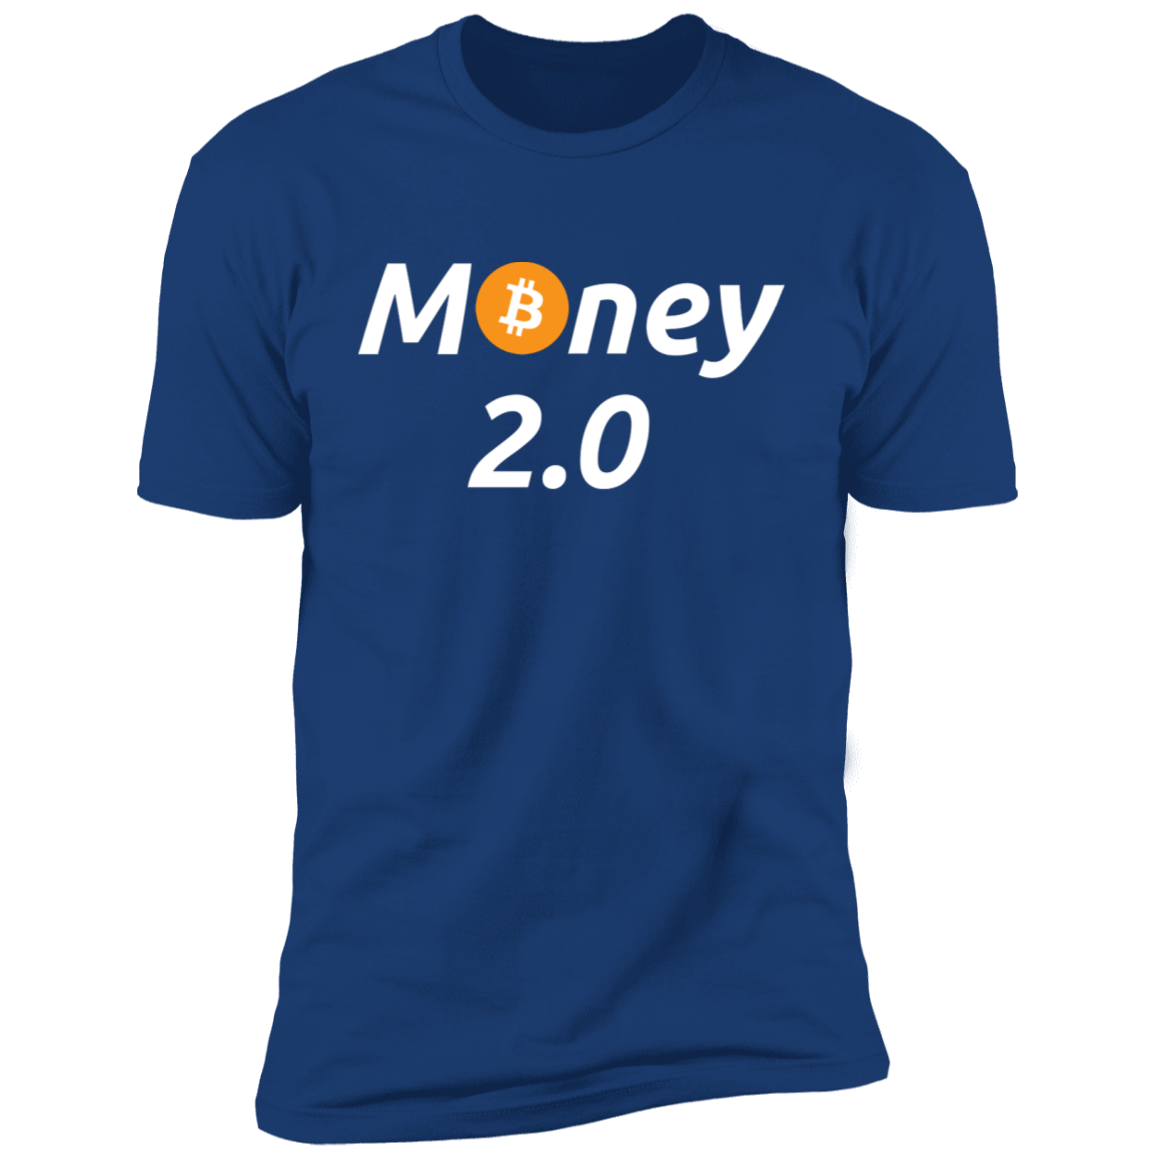 Money 2.0 Unisex Bitcoin T-Shirt